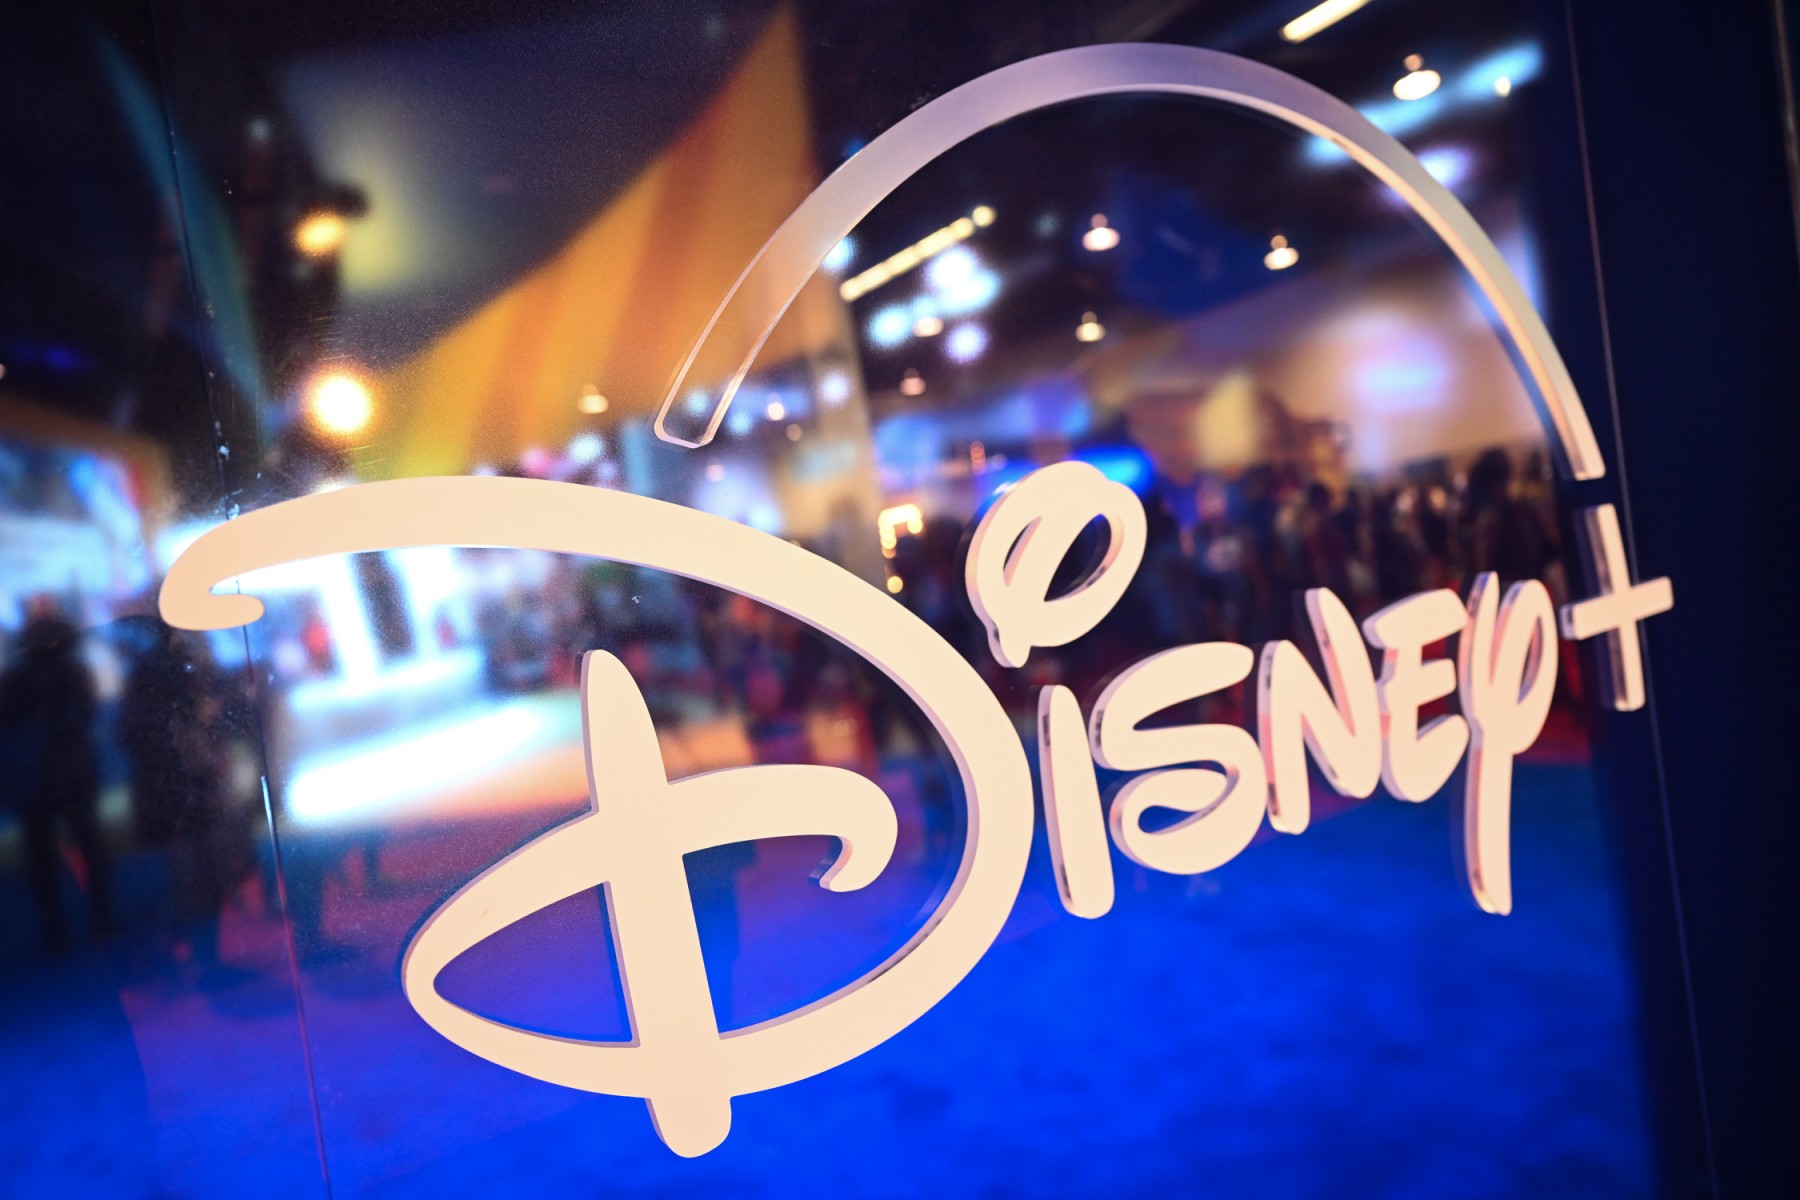 Disney+ subscribers hit 164.2m but losses increase